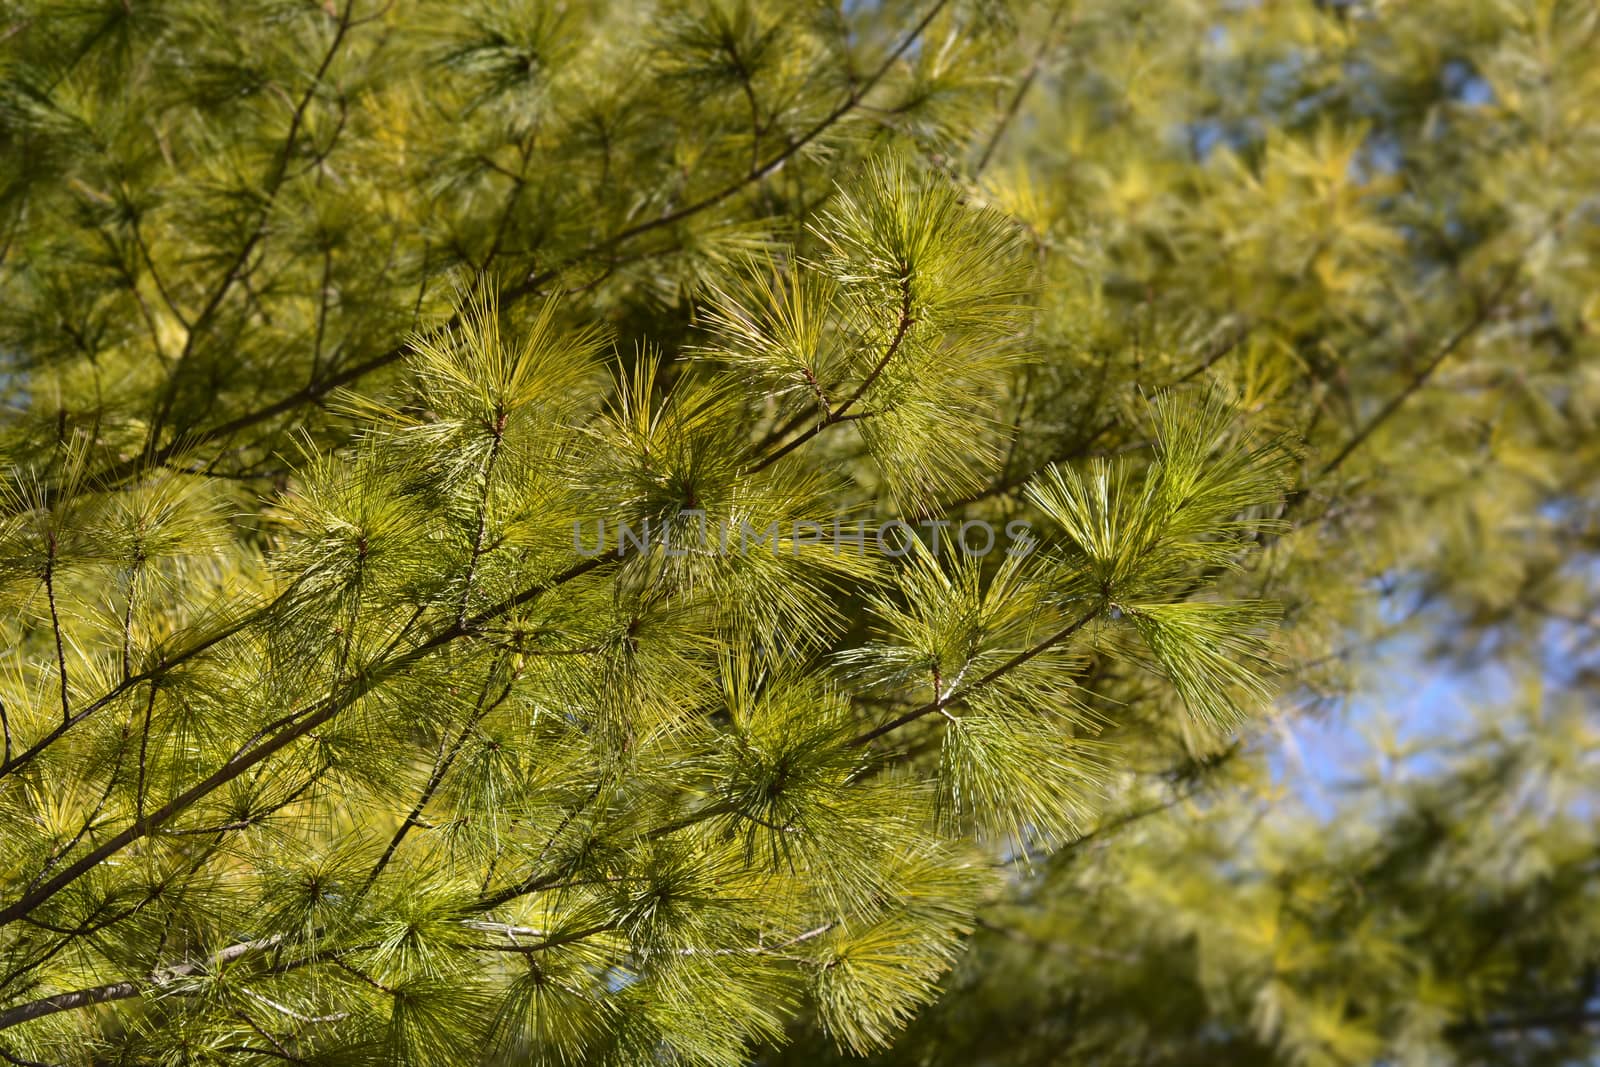 Eastern white pine - Latin name - Pinus strobus